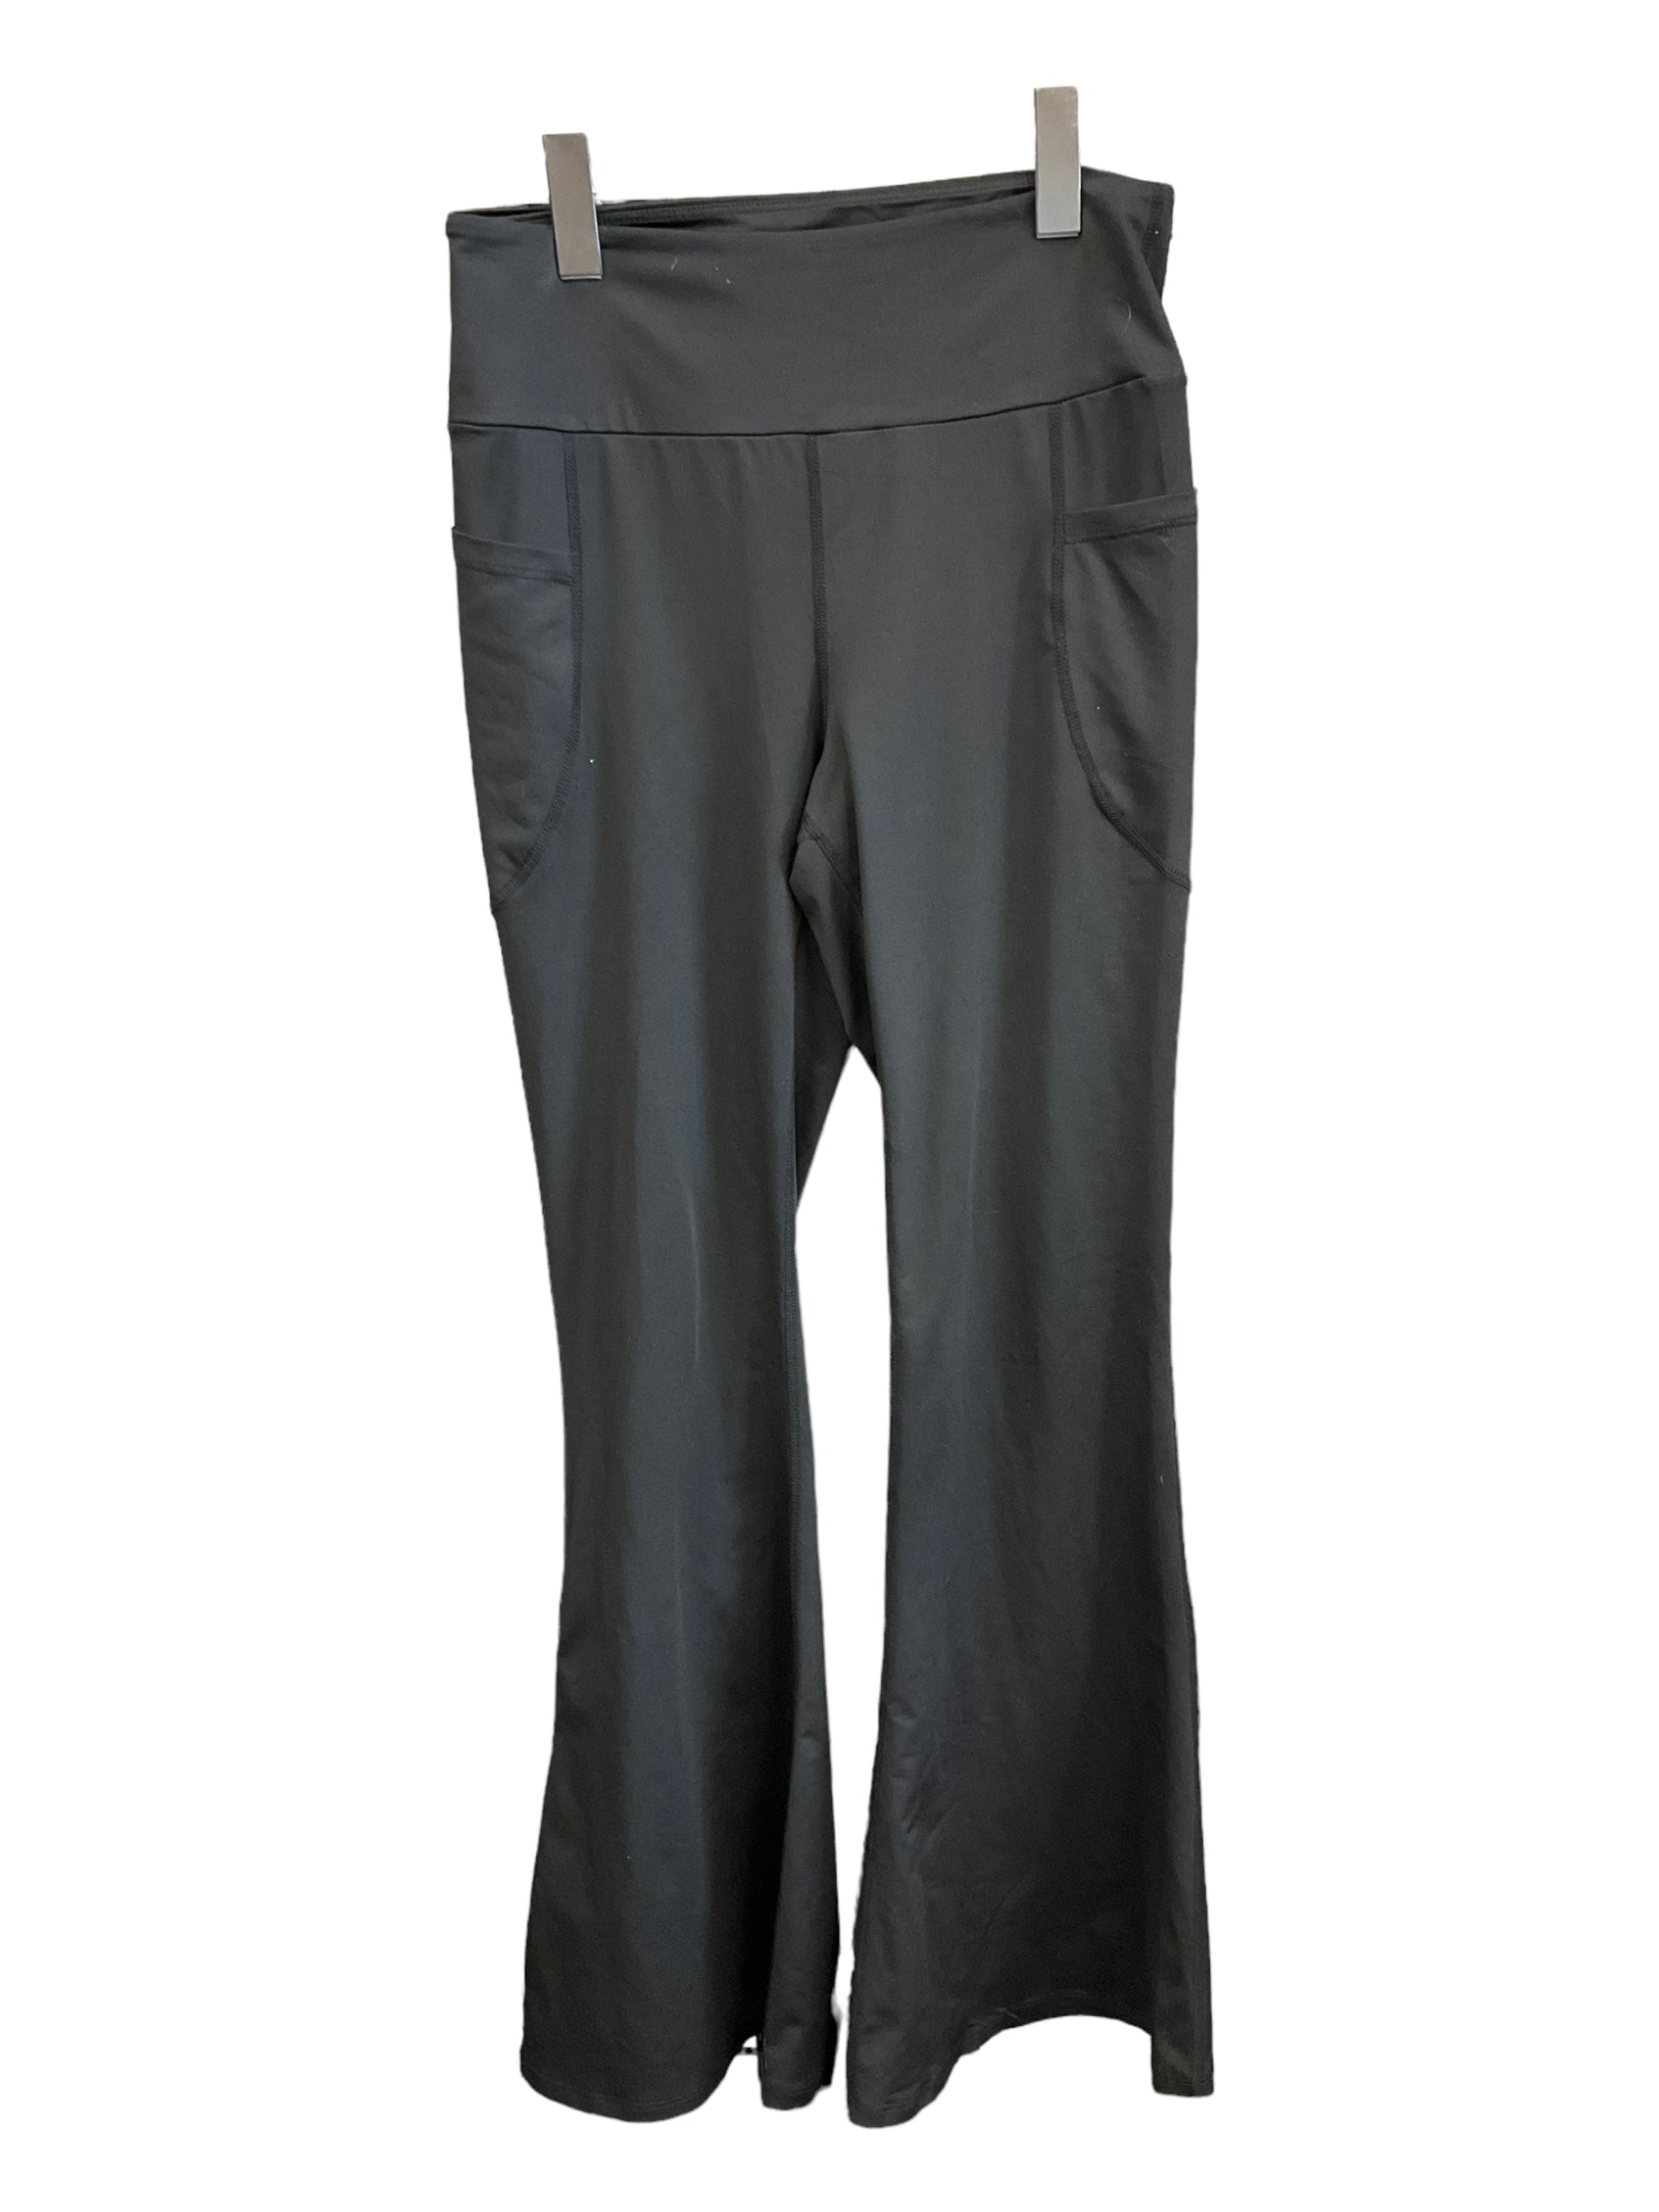 White House/Black Market 90's Capri length Black Pants Size 8 SKU